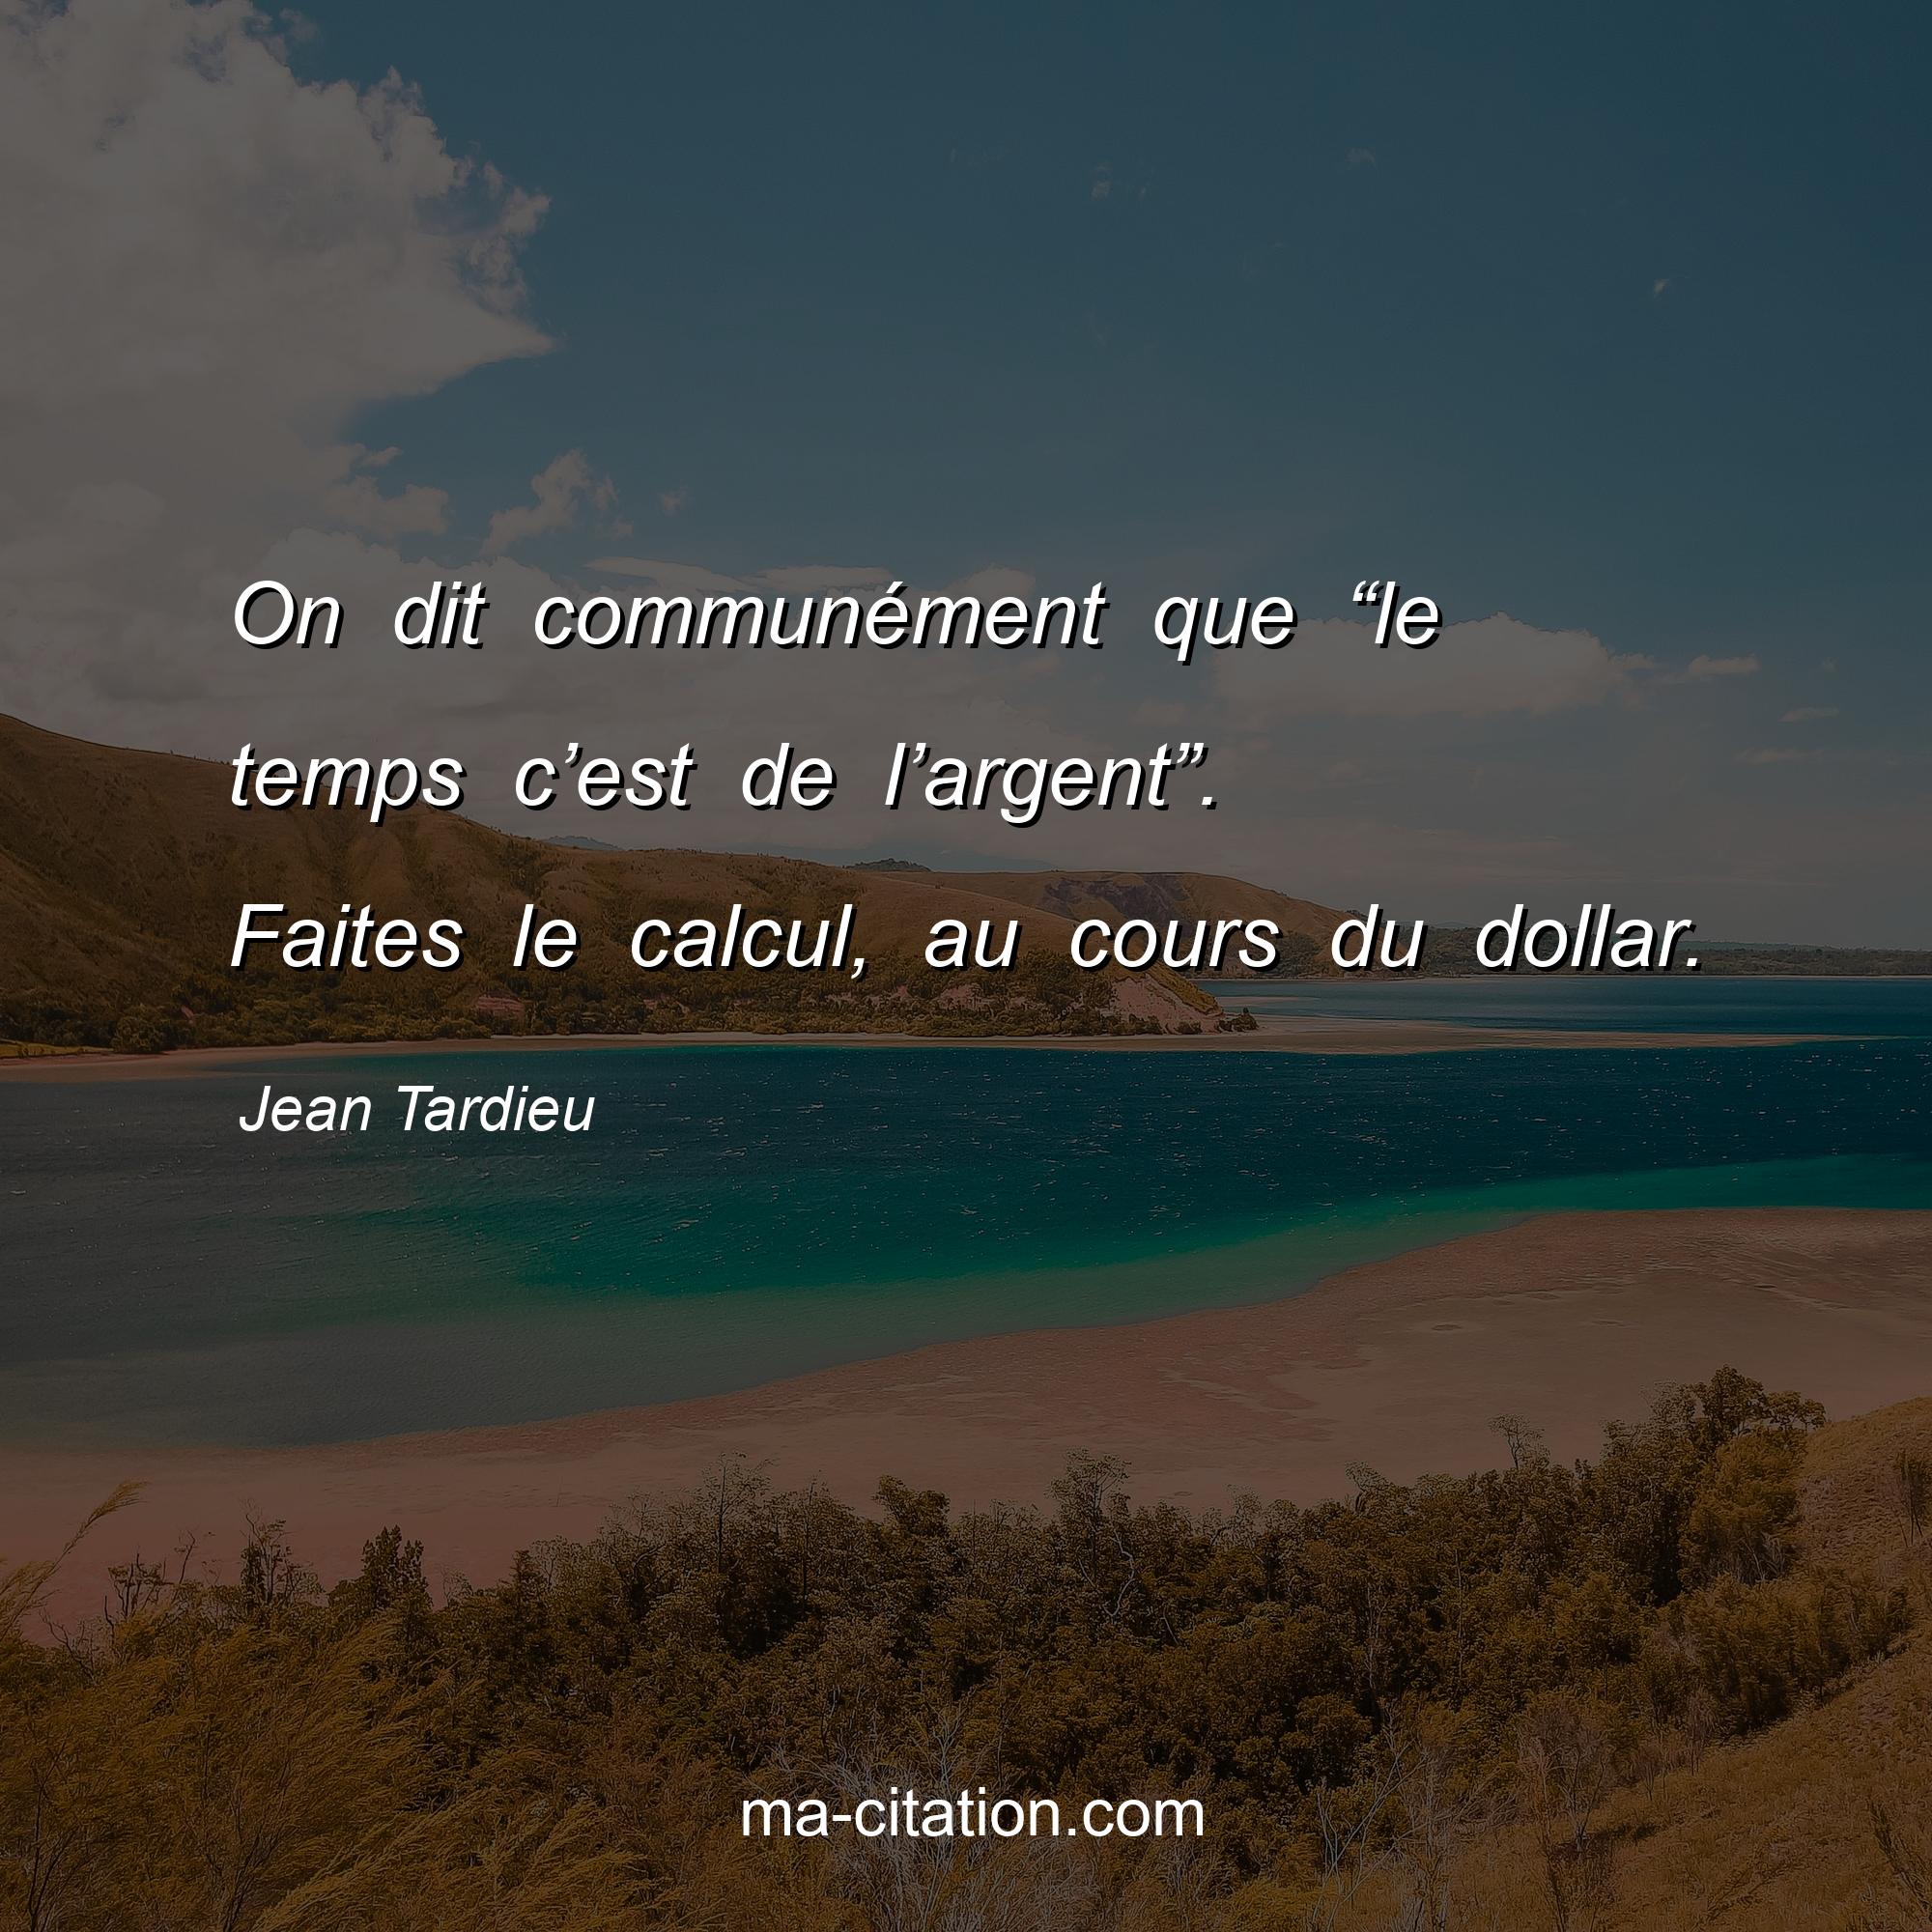 Jean Tardieu : On dit communément que “le temps c’est de l’argent”. Faites le calcul, au cours du dollar.